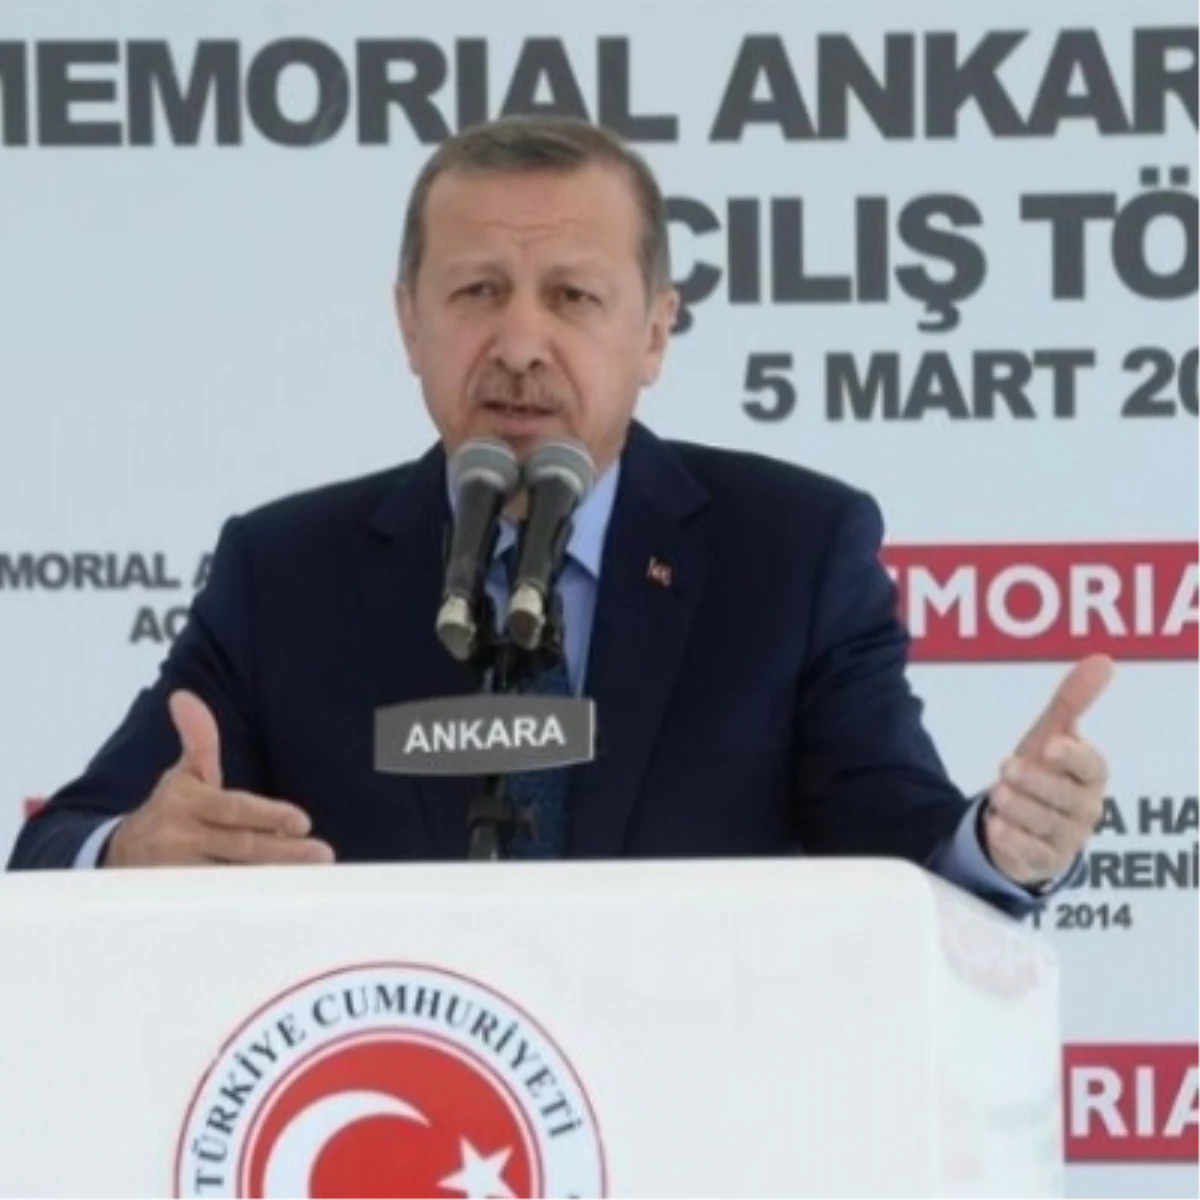 Memorial Ankara Hastanesi Açılış Töreni